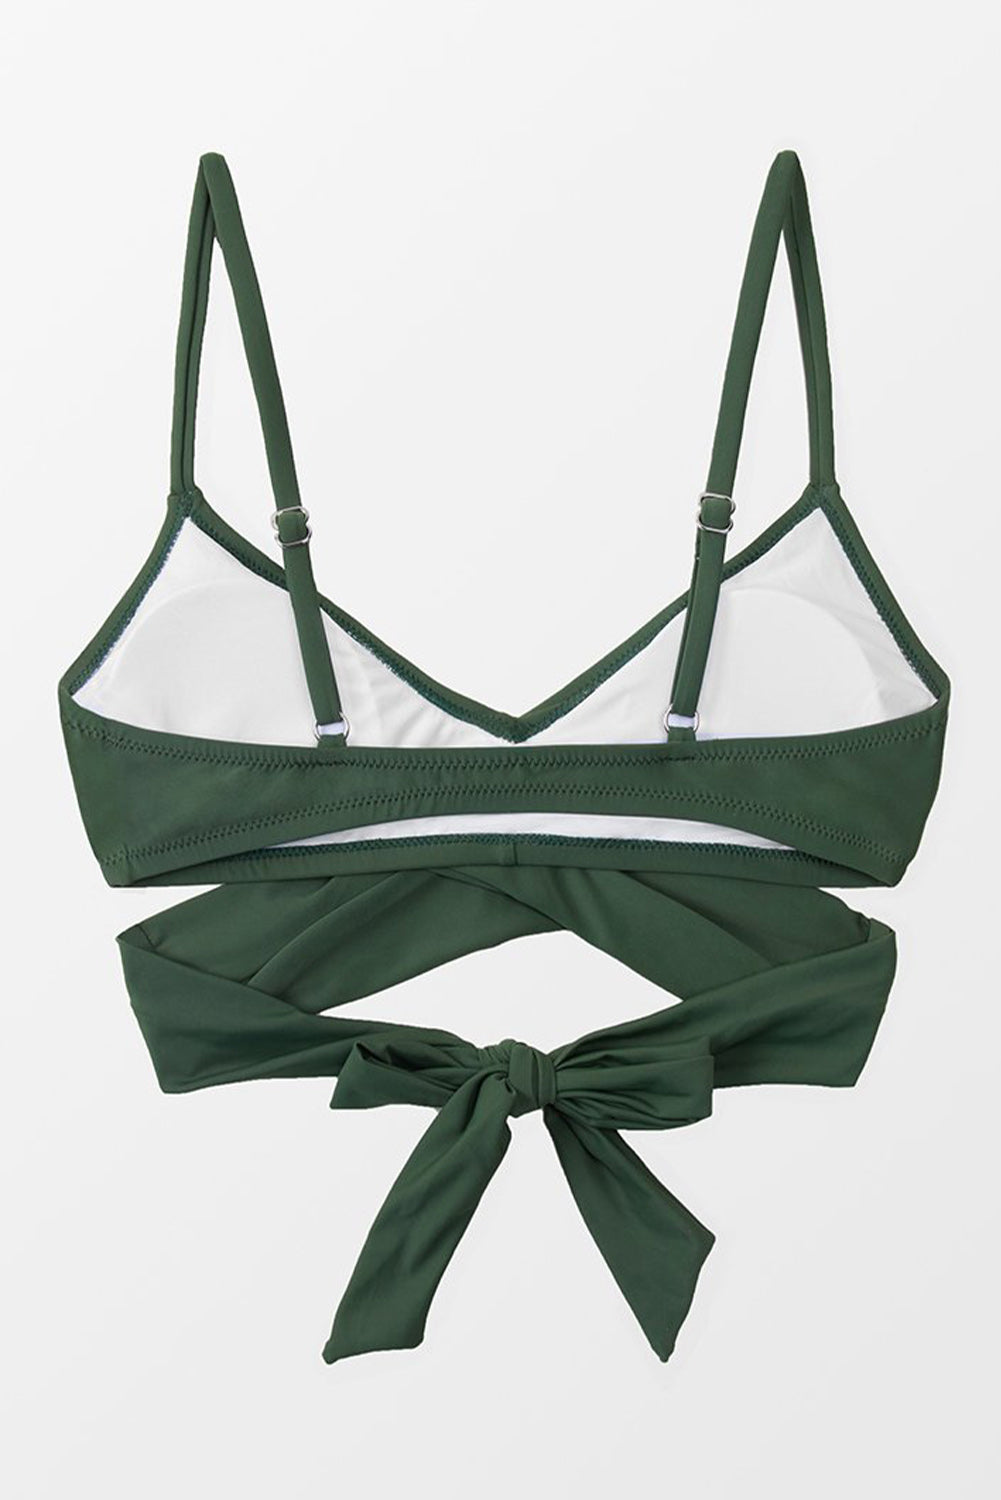 Green Elliott Wrap Tie Back Bikini Top